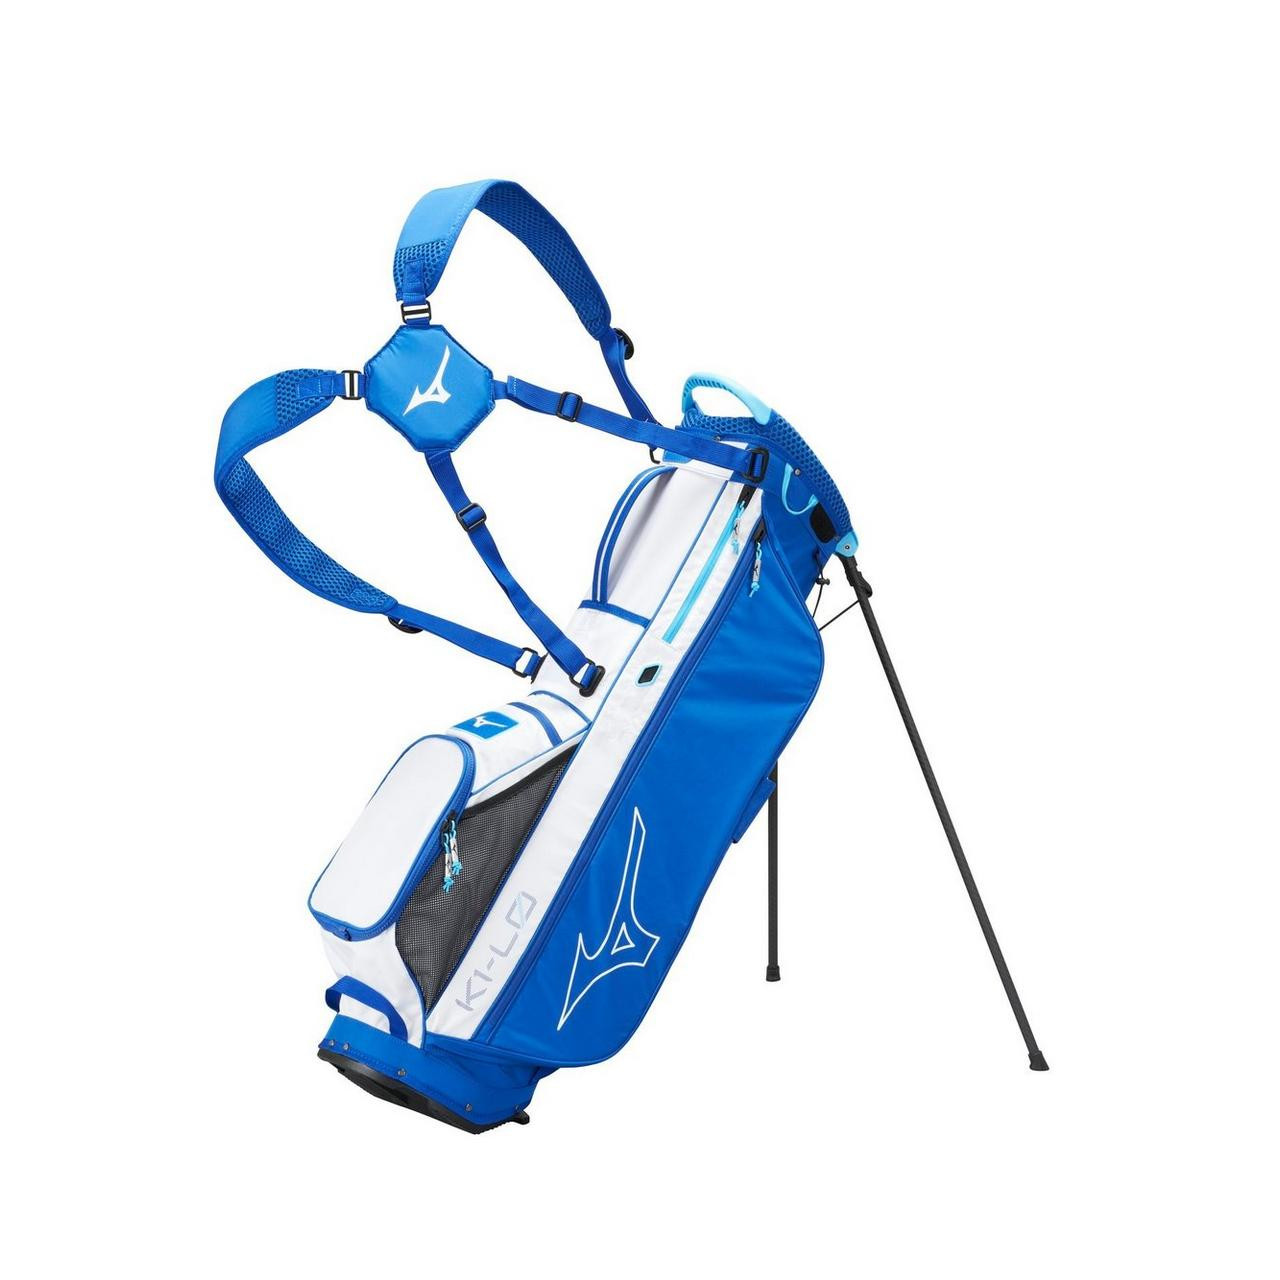 K1-L0 Lightweight Stand Golf Bag